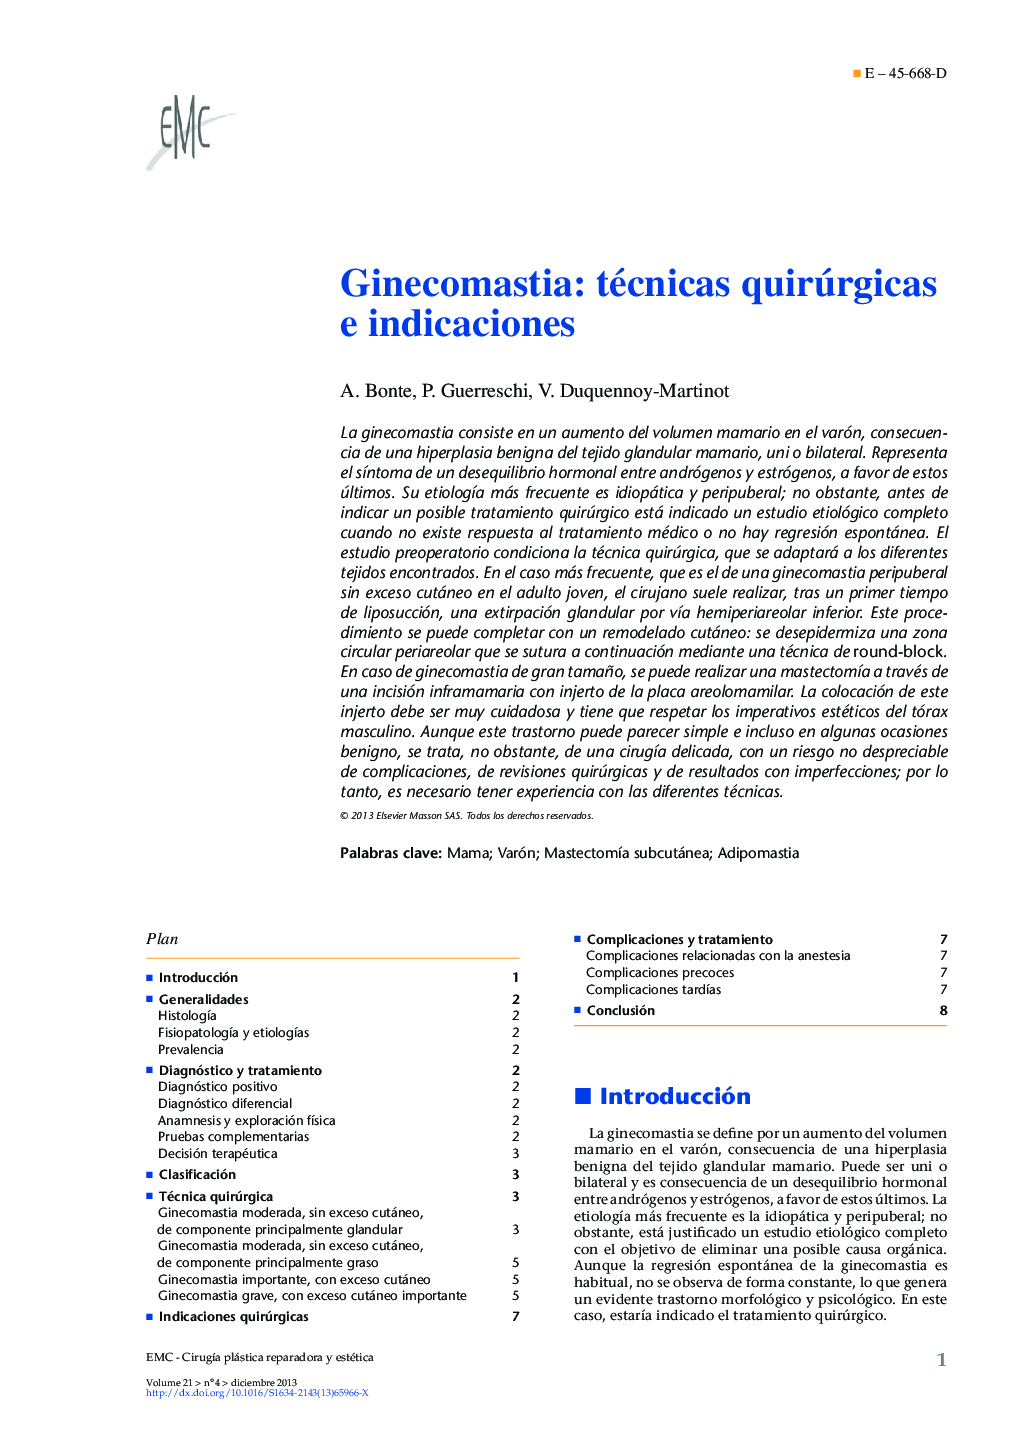 Ginecomastia: técnicas quirúrgicas e indicaciones